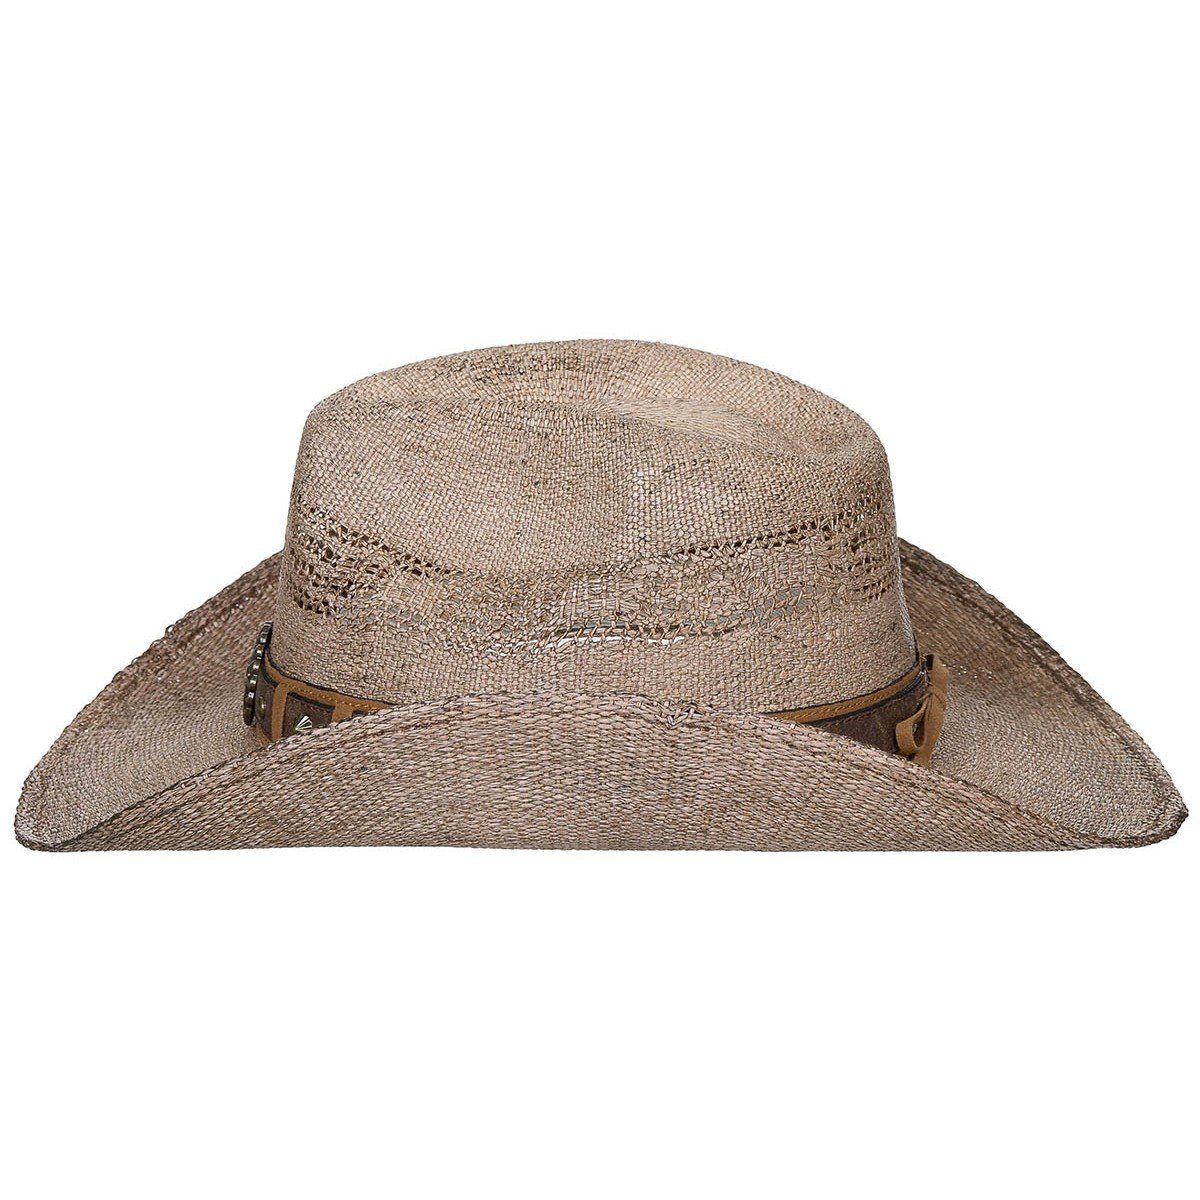 FoxOutdoor Strohhut Strohhut, "Colorado", Western Hutband, Style mit Hutband braun mit